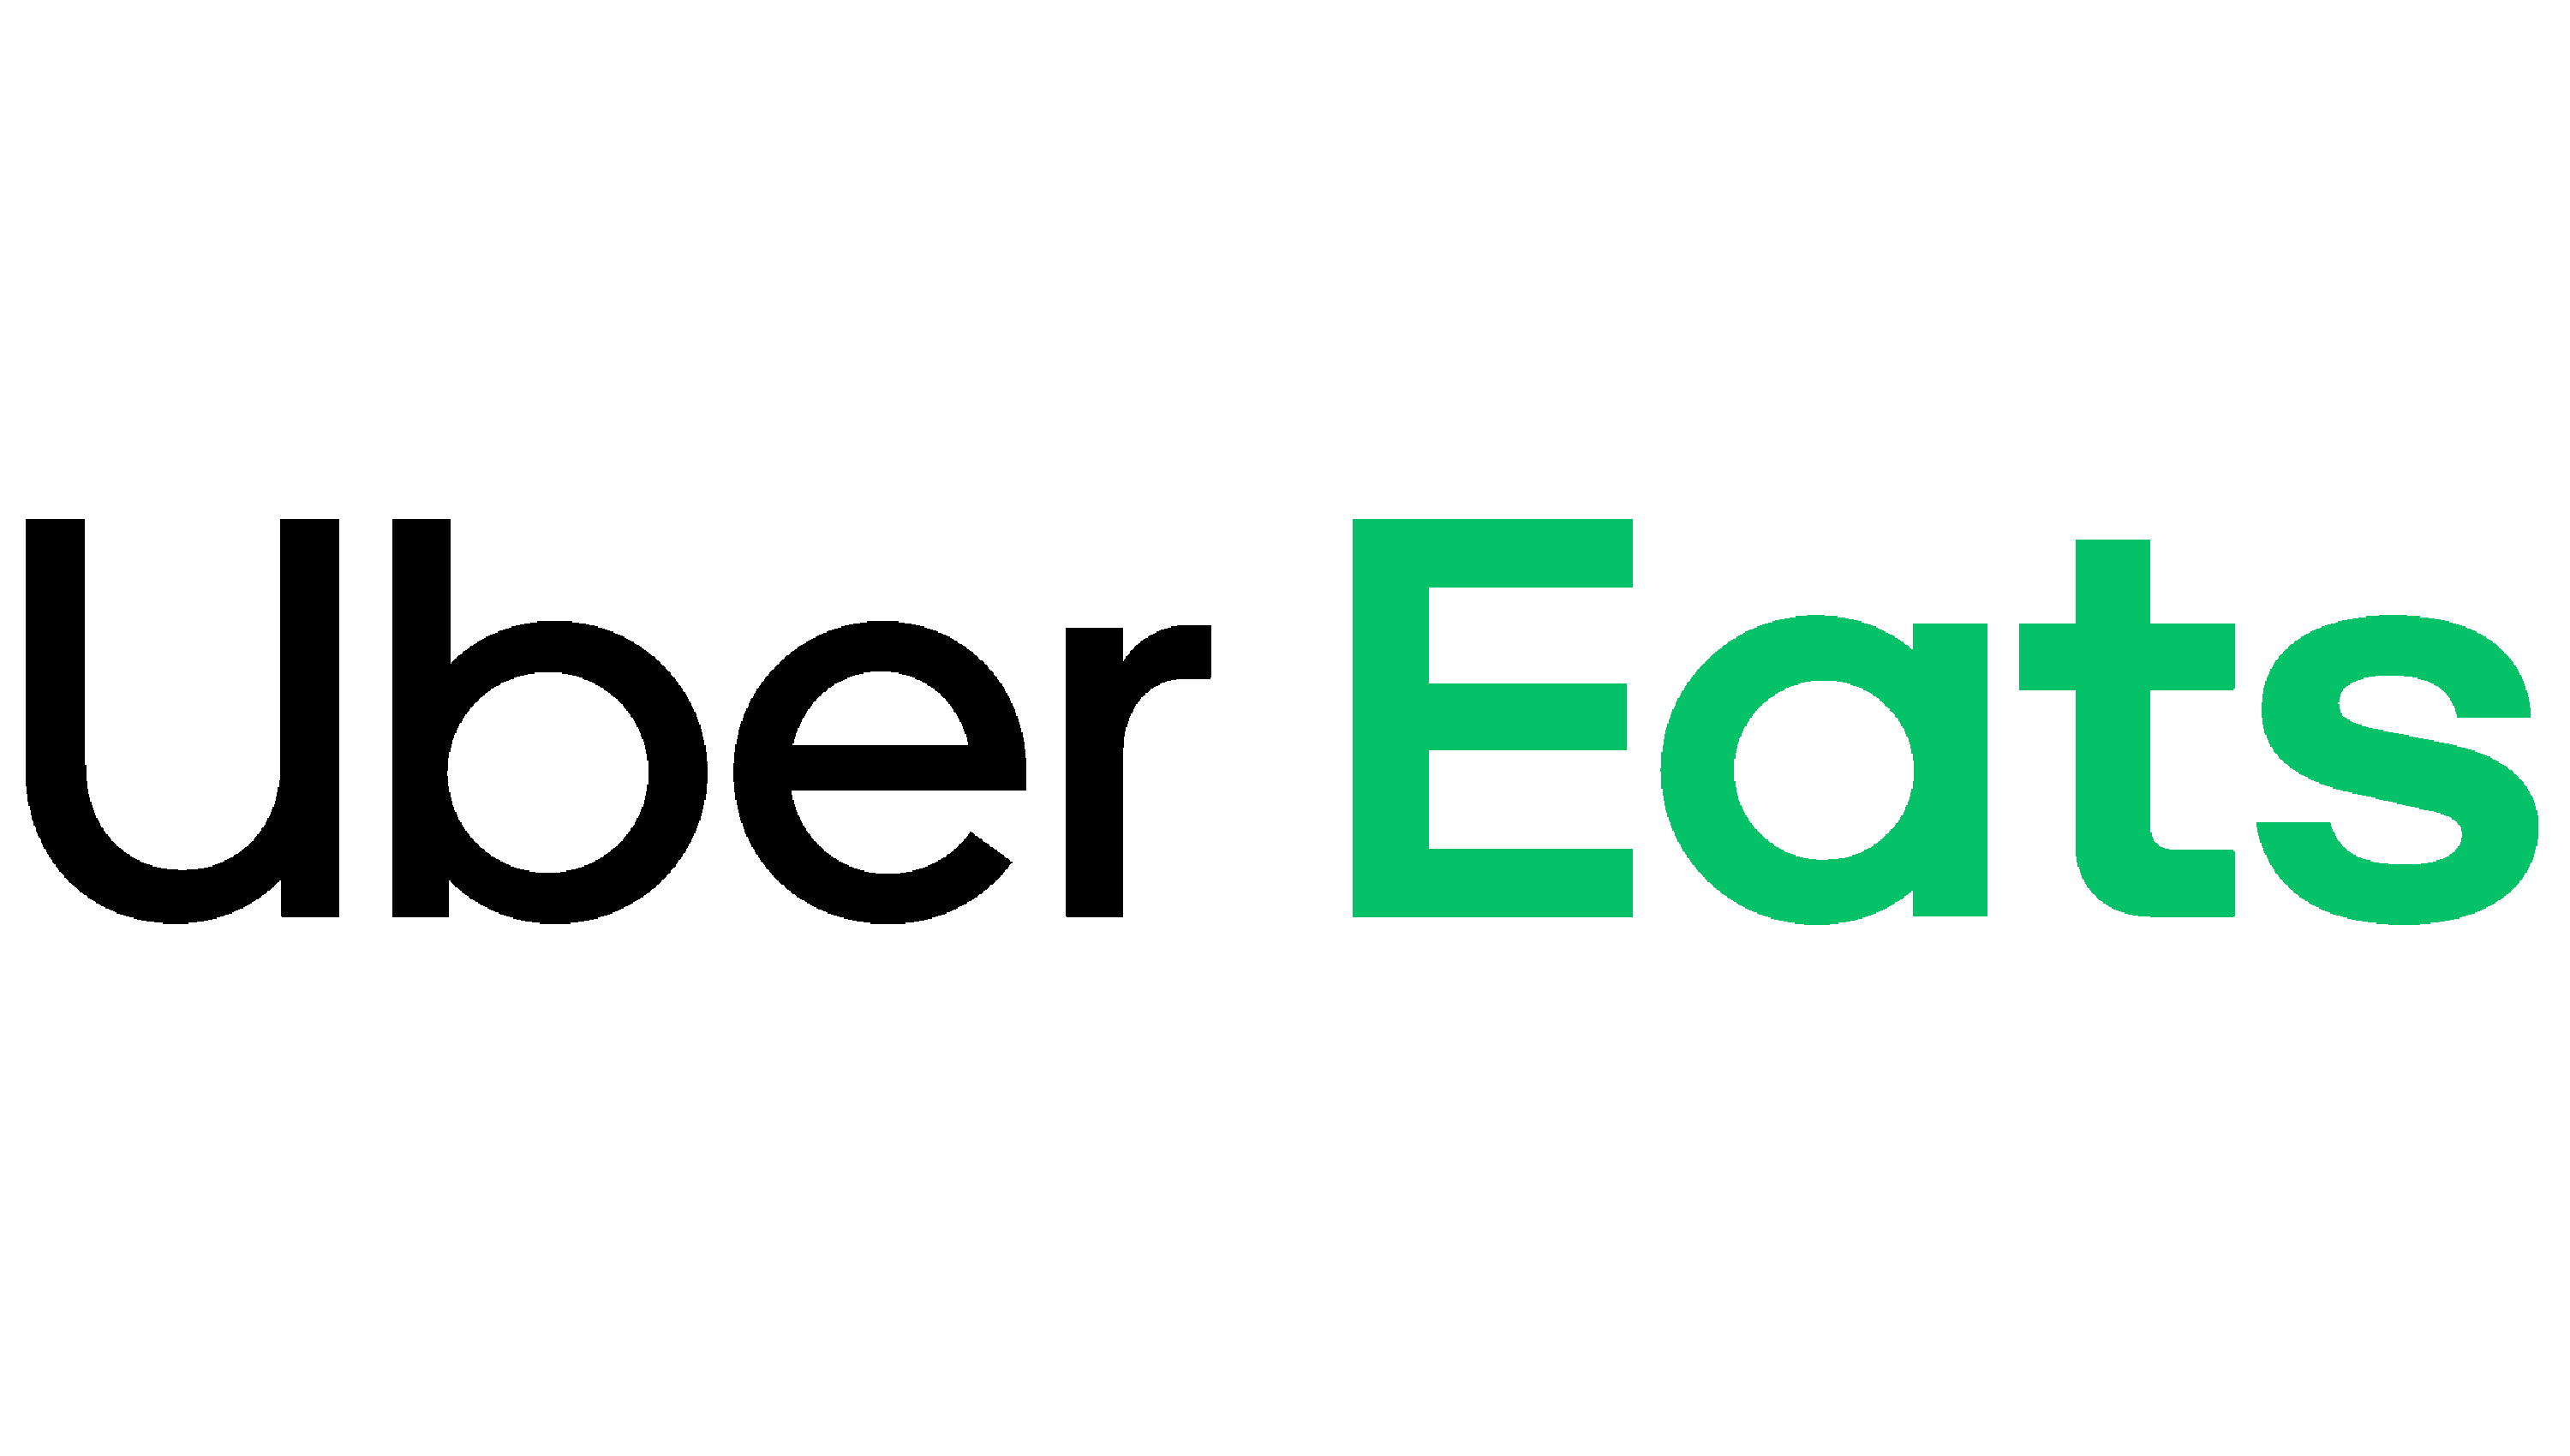 Uber Eats' logo